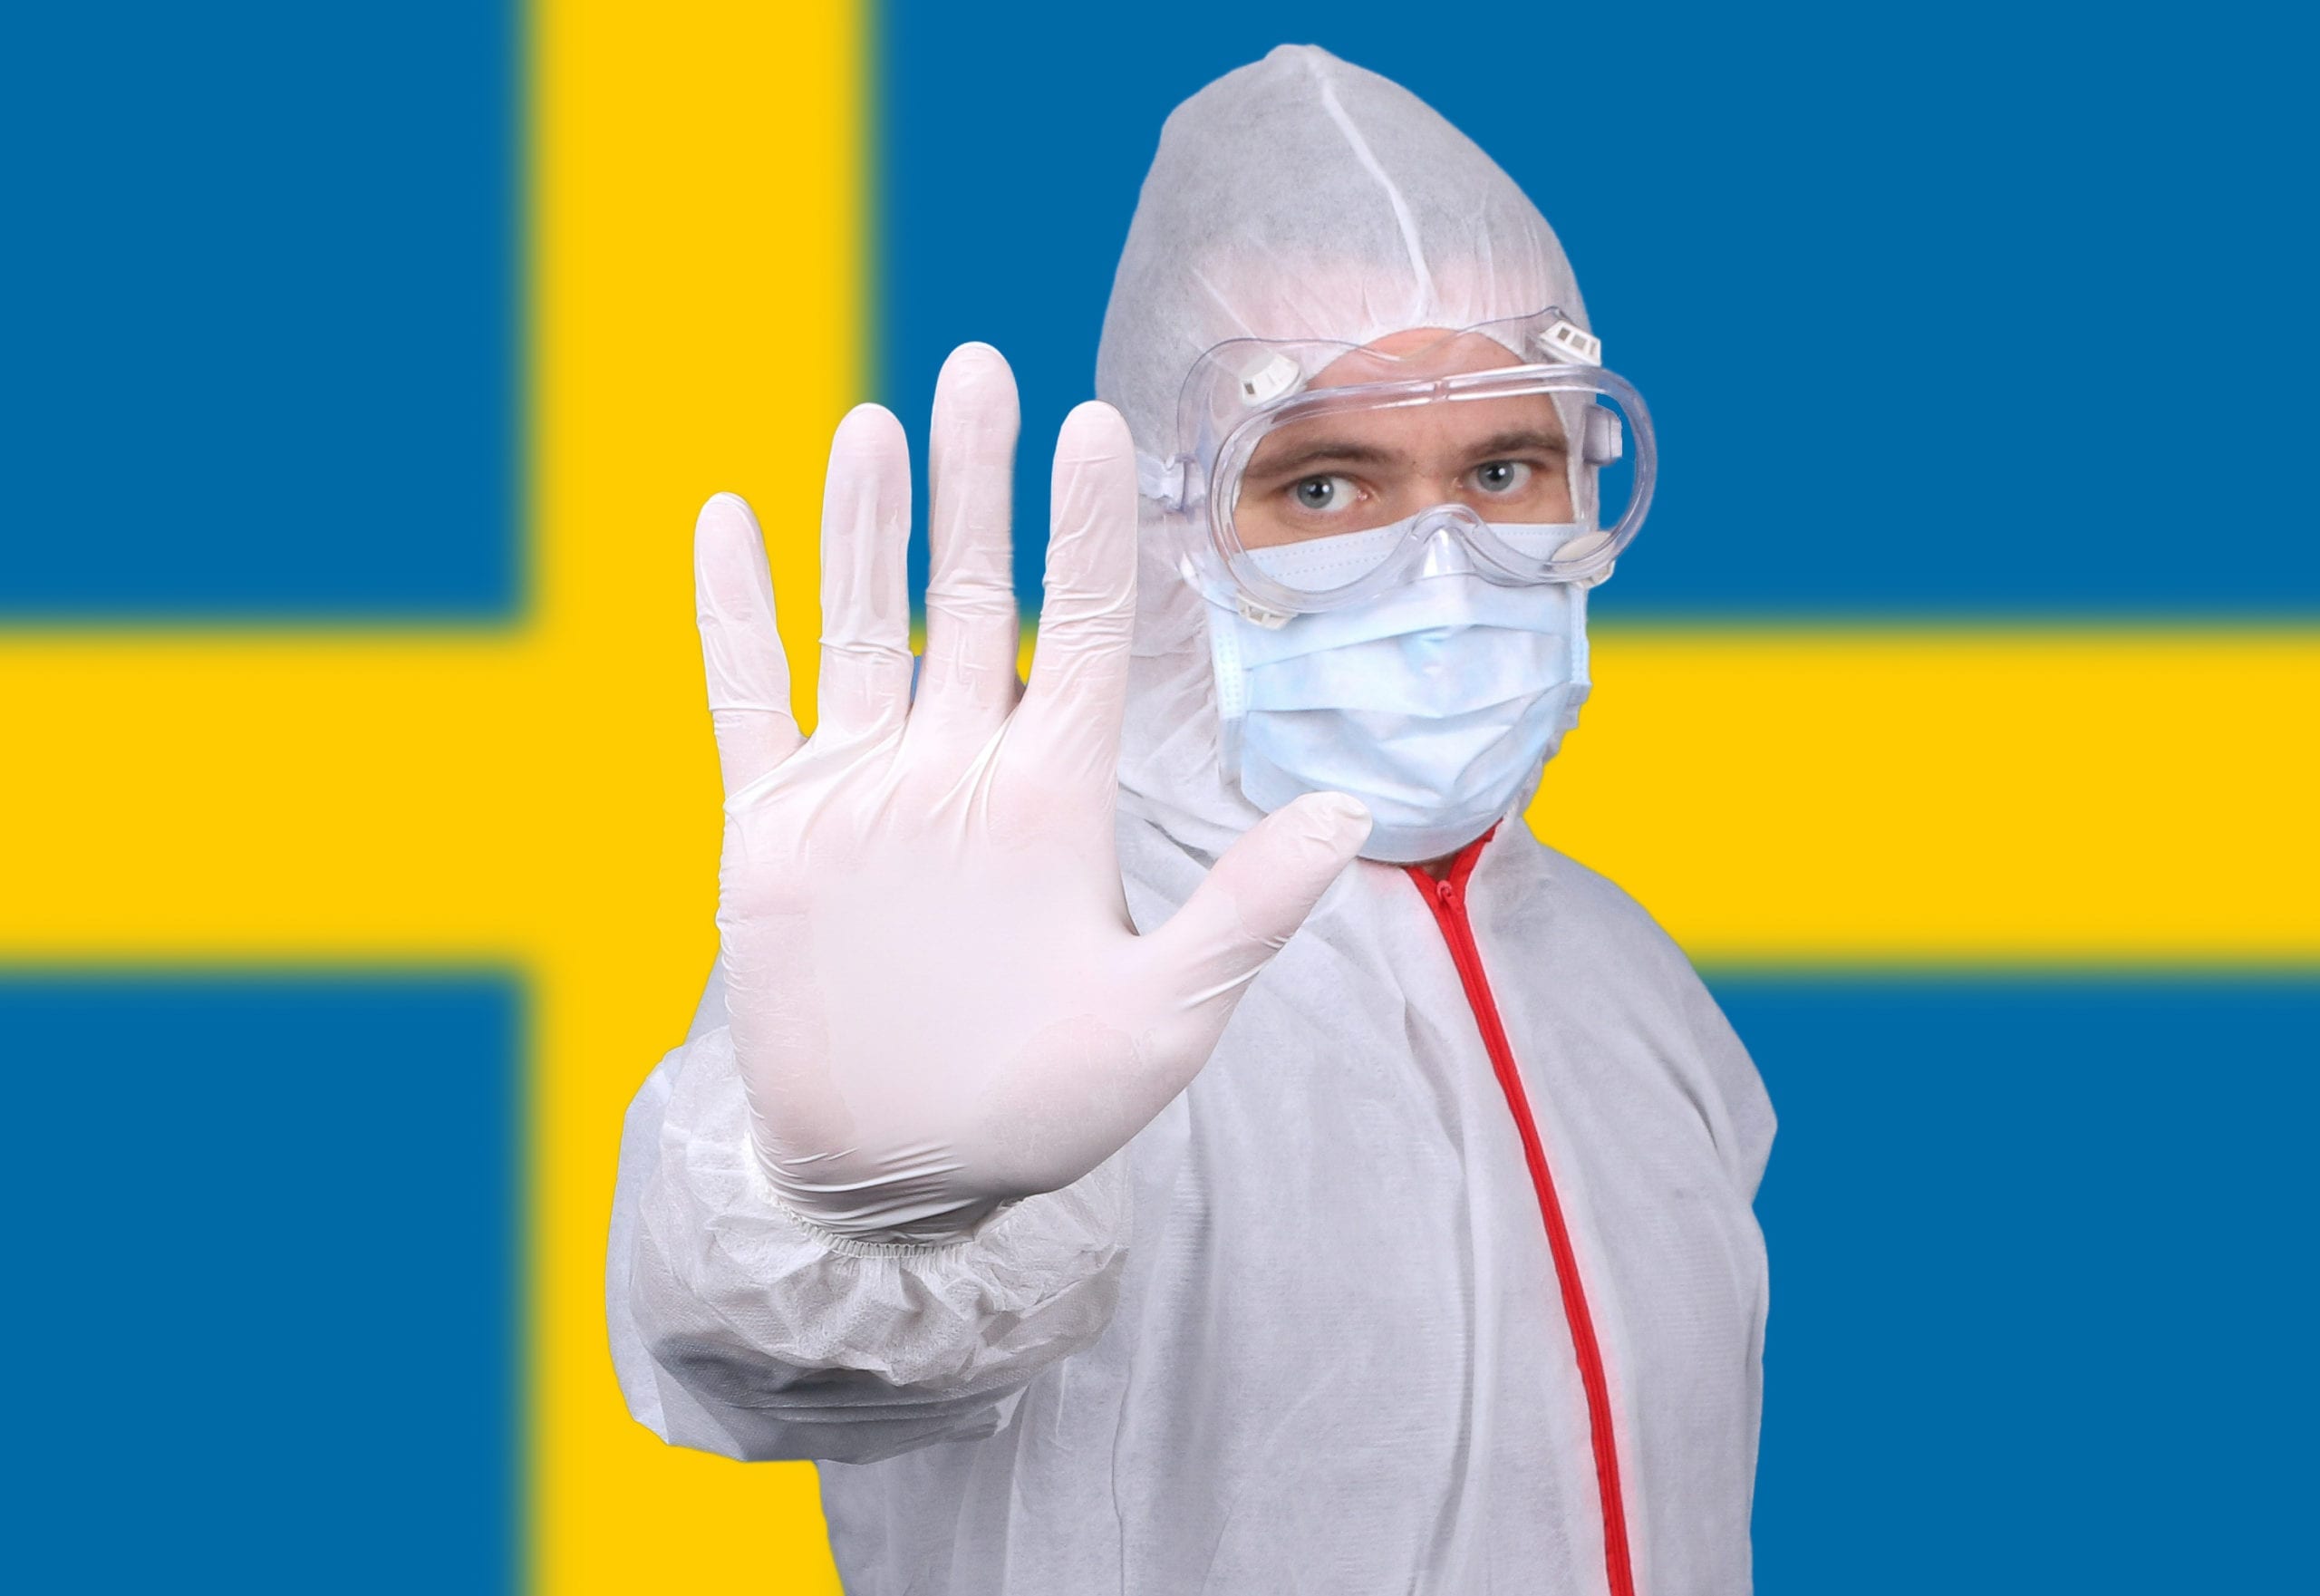 La scommessa persa della Svezia